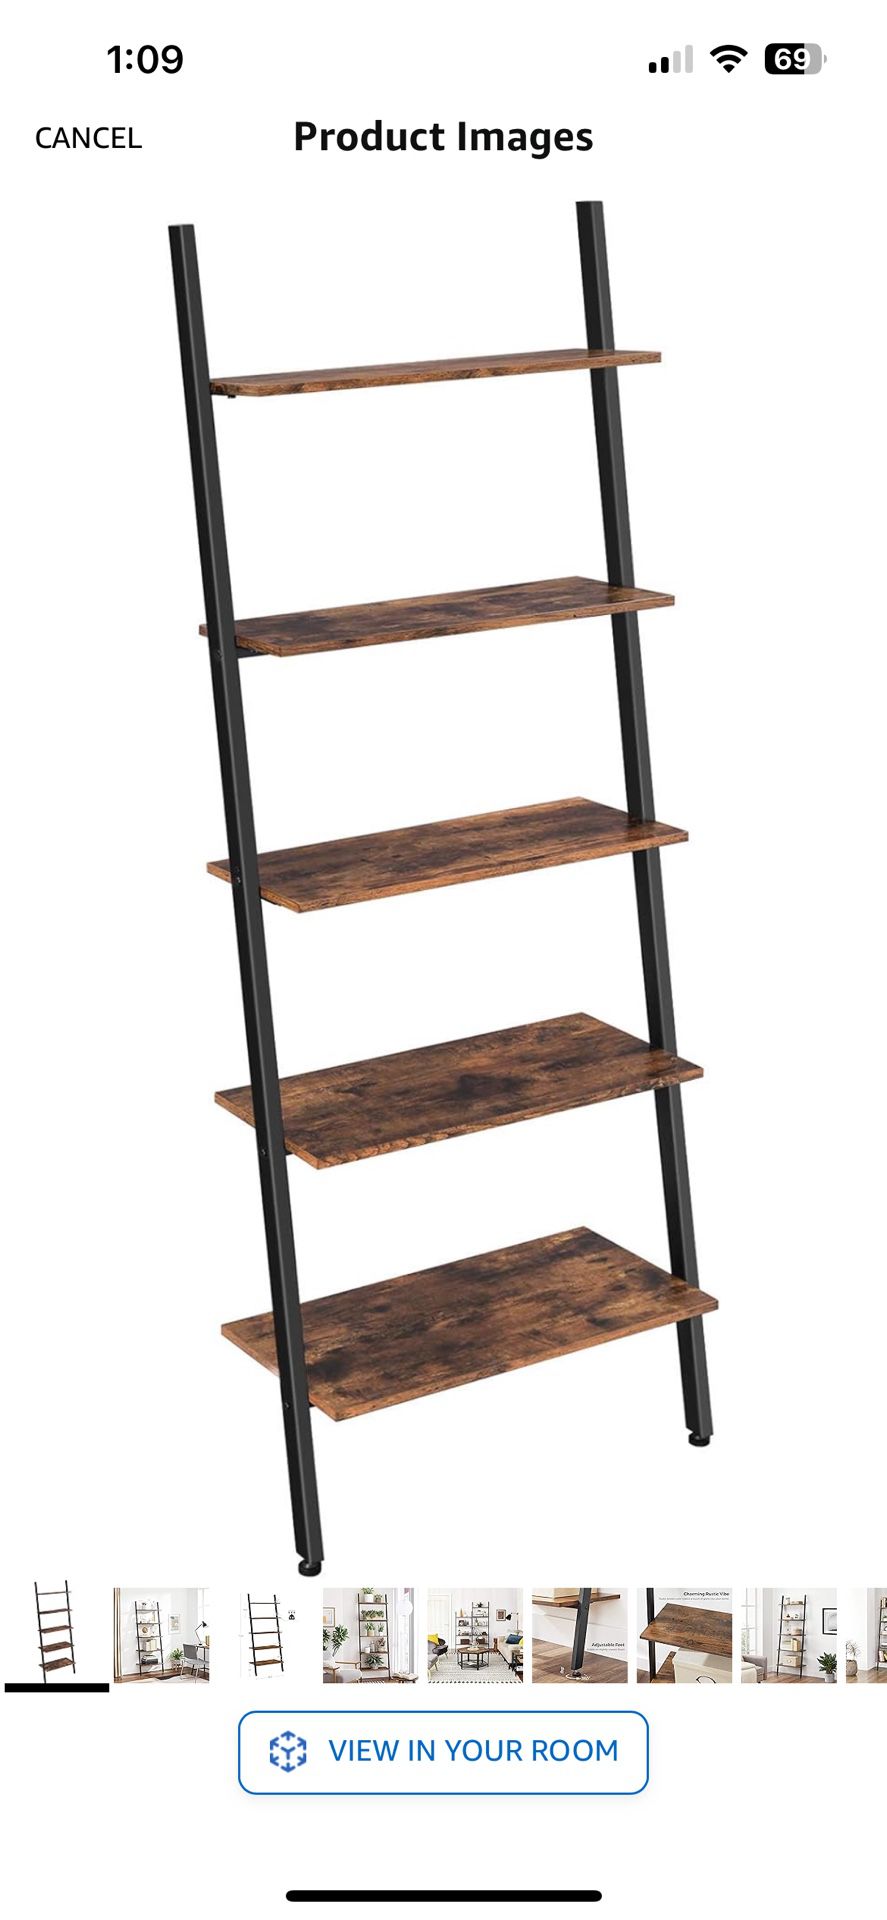 2 Ladder Bookshelves Shelf